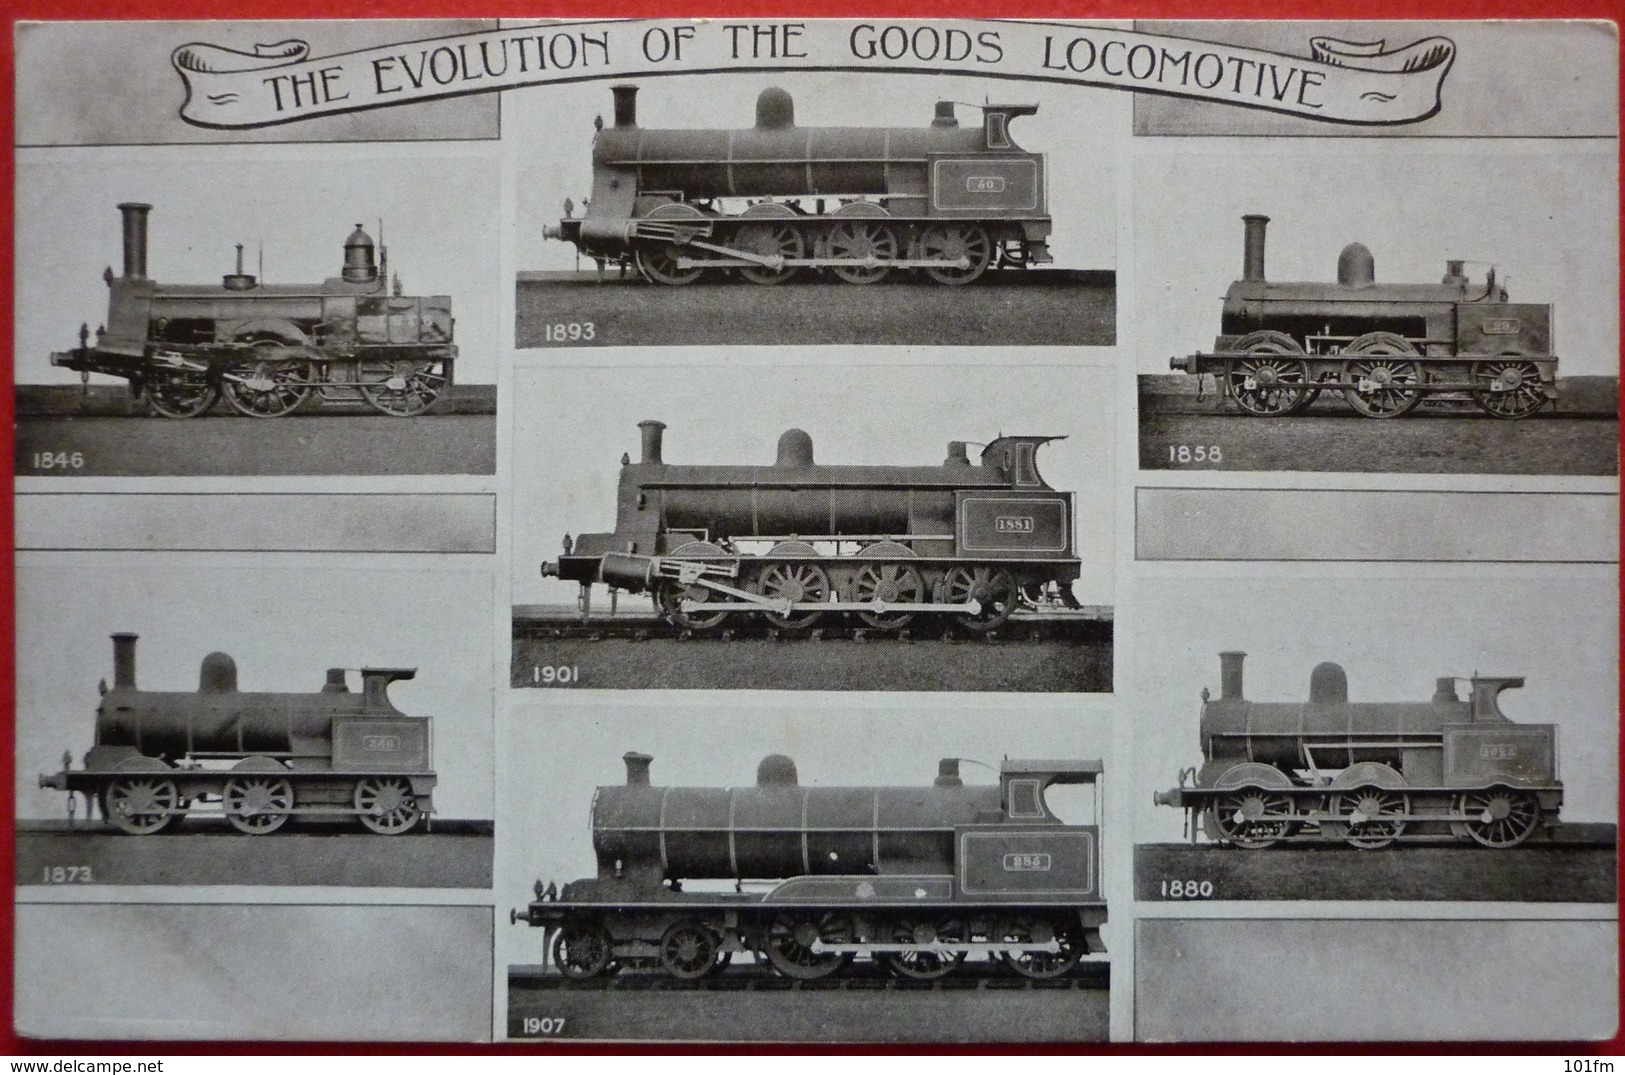 THE EVOLUTION OF THE GOODS LOCOMOTIVE - STEAM LOCOMOTIVE - Eisenbahnen